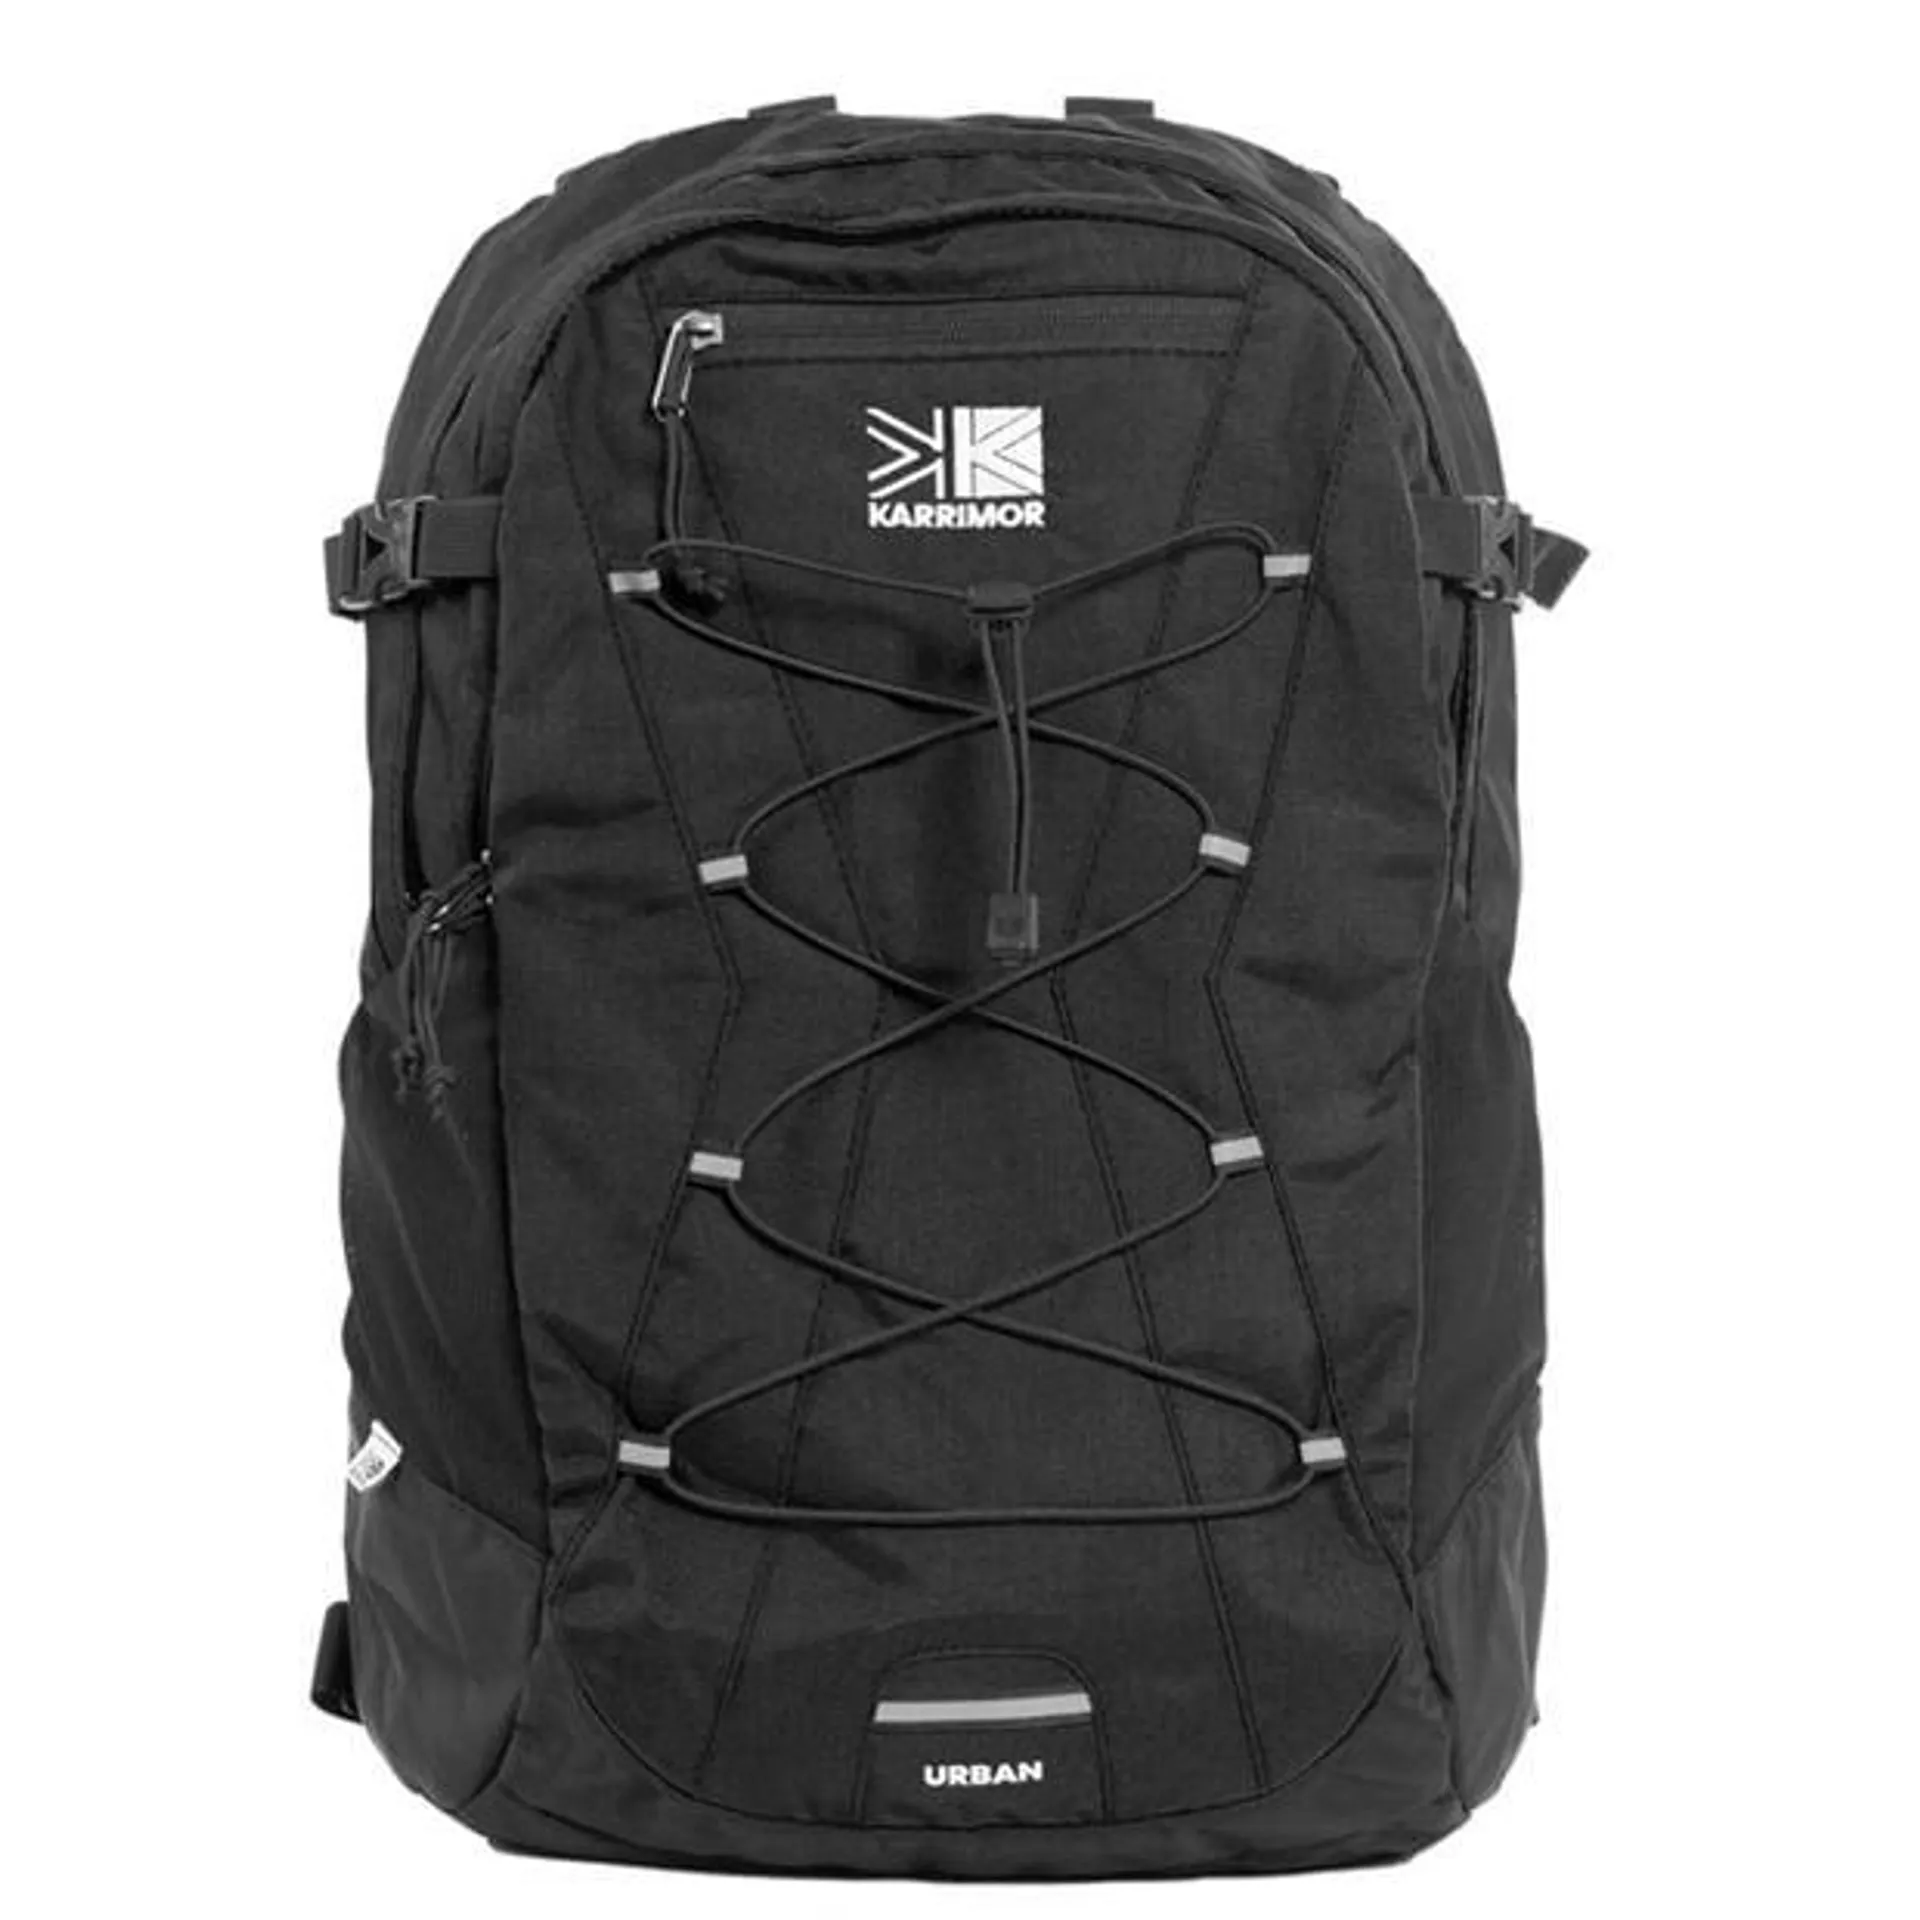 Urban 22 Backpack